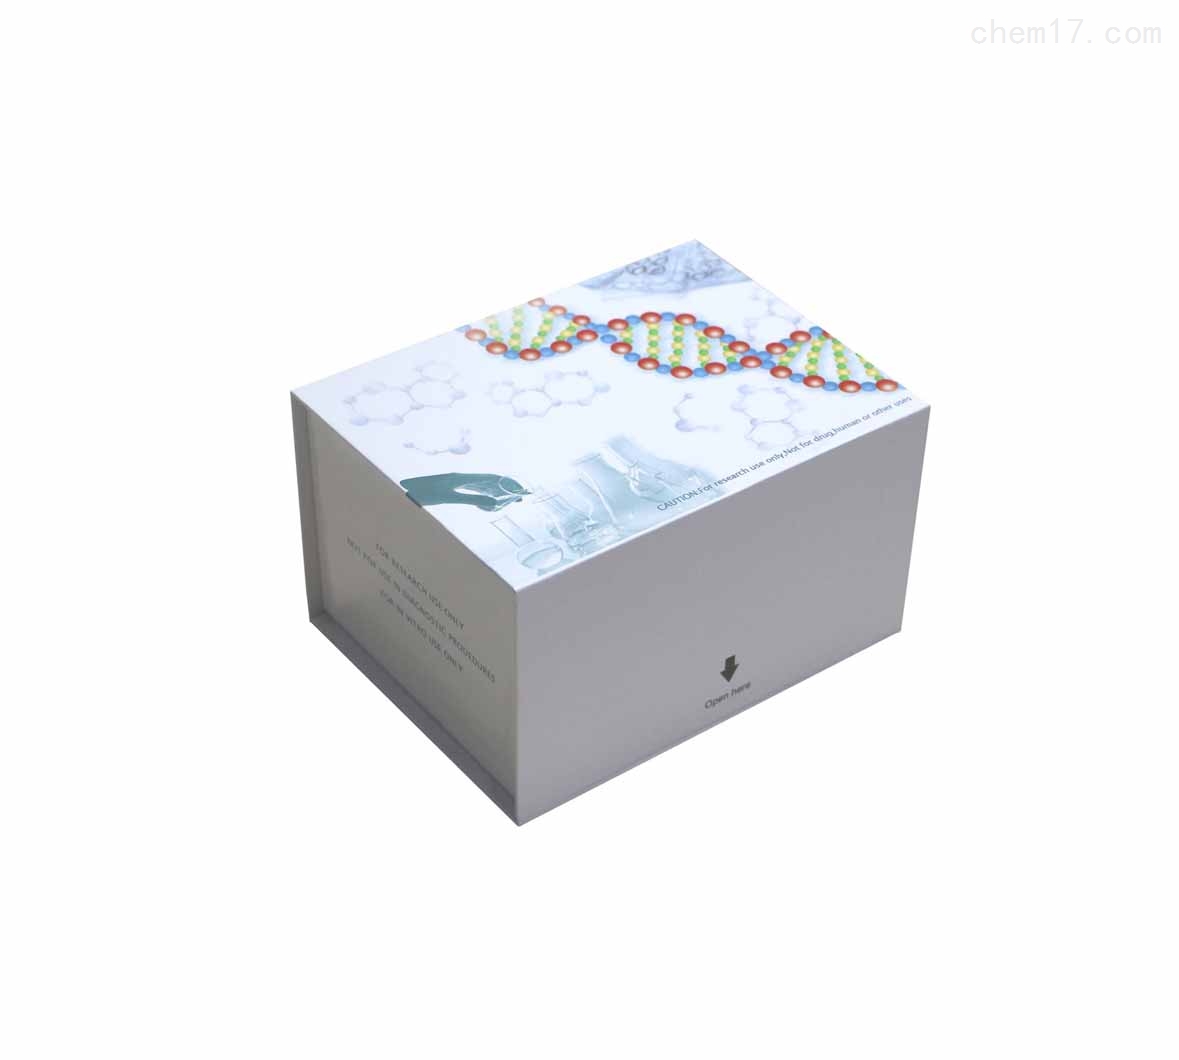 人长效甲状腺刺激素(LATS)ELISA试剂盒质量保证